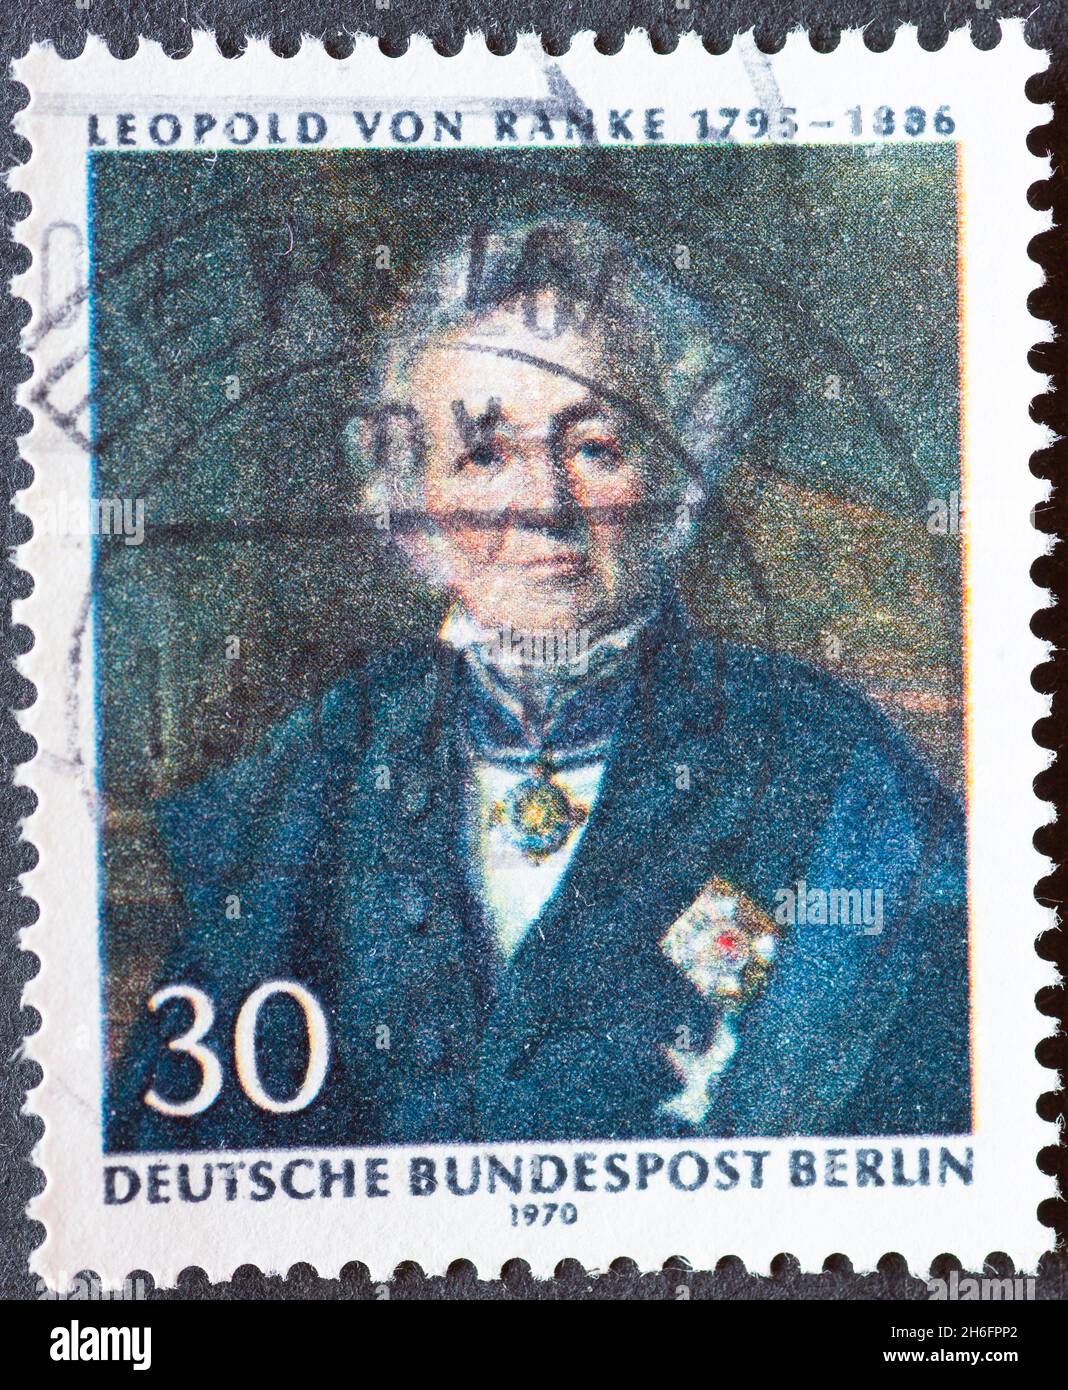 ALLEMAGNE, Berlin - VERS 1970: Timbre-poste d'Allemagne, Berlin montrant un portrait de l'historien, professeur d'université Leopold von Ranke 1795-188 Banque D'Images